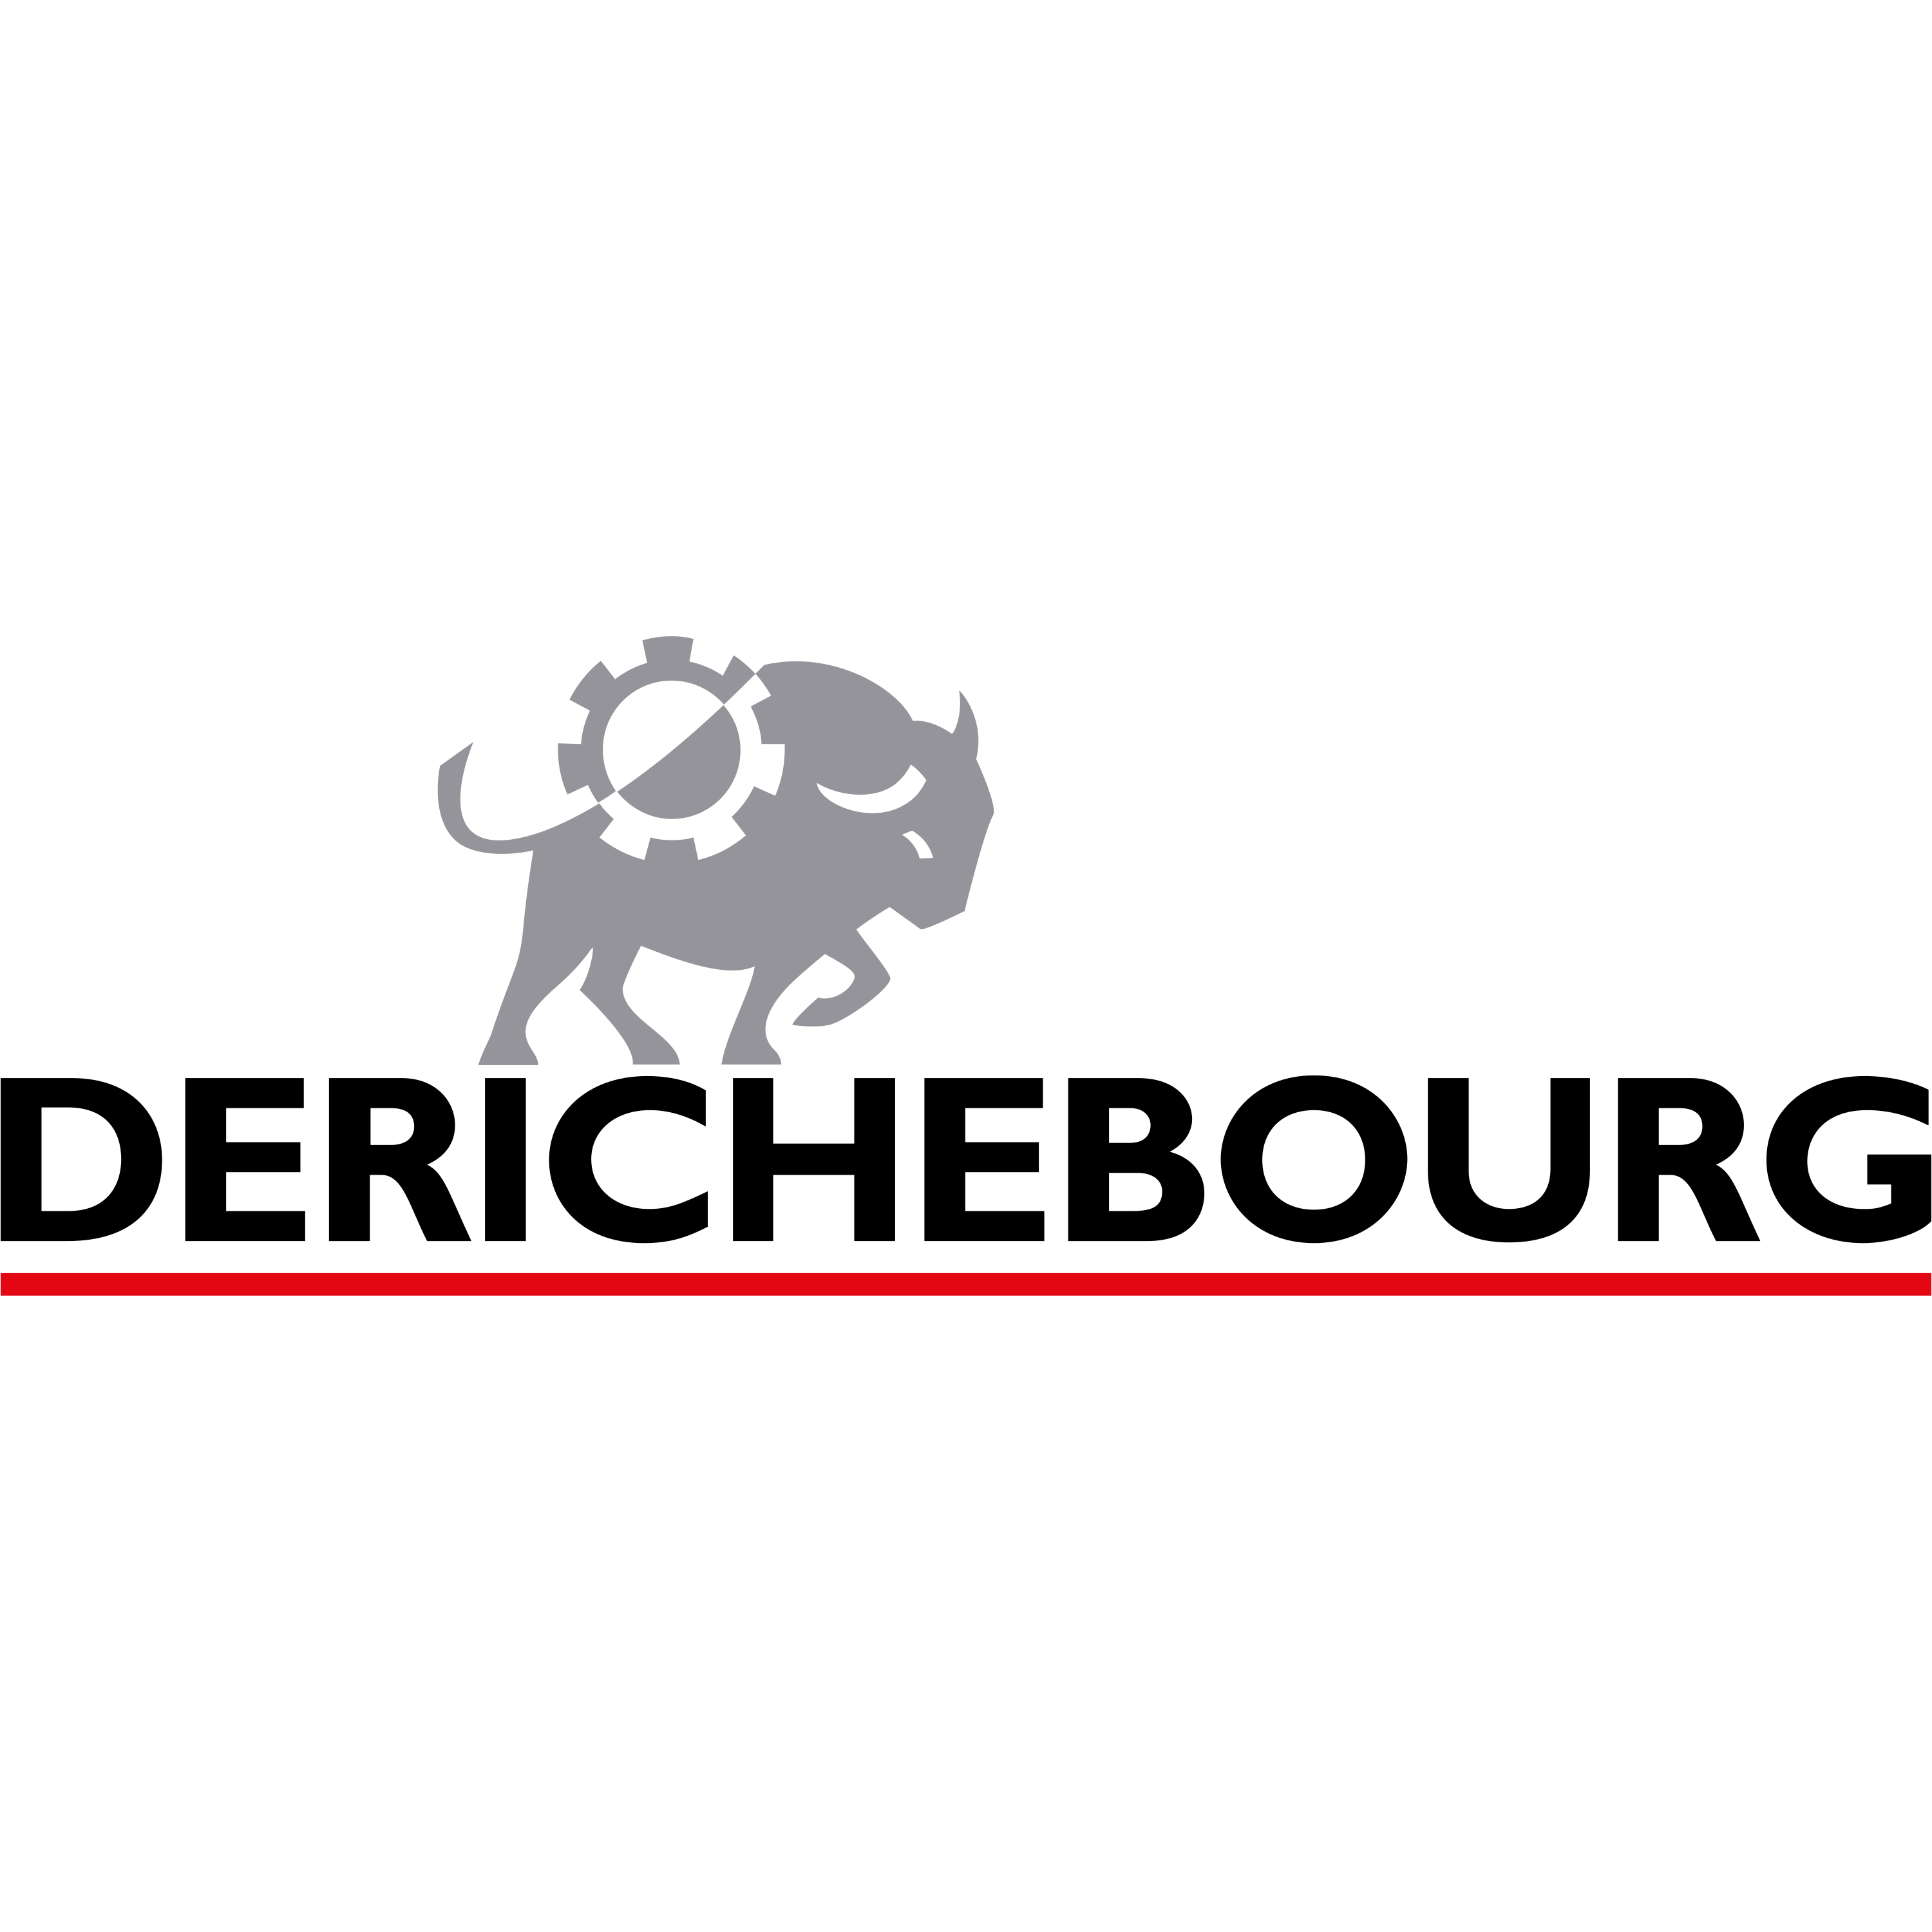 Derichebourg Logo  Transparent Image